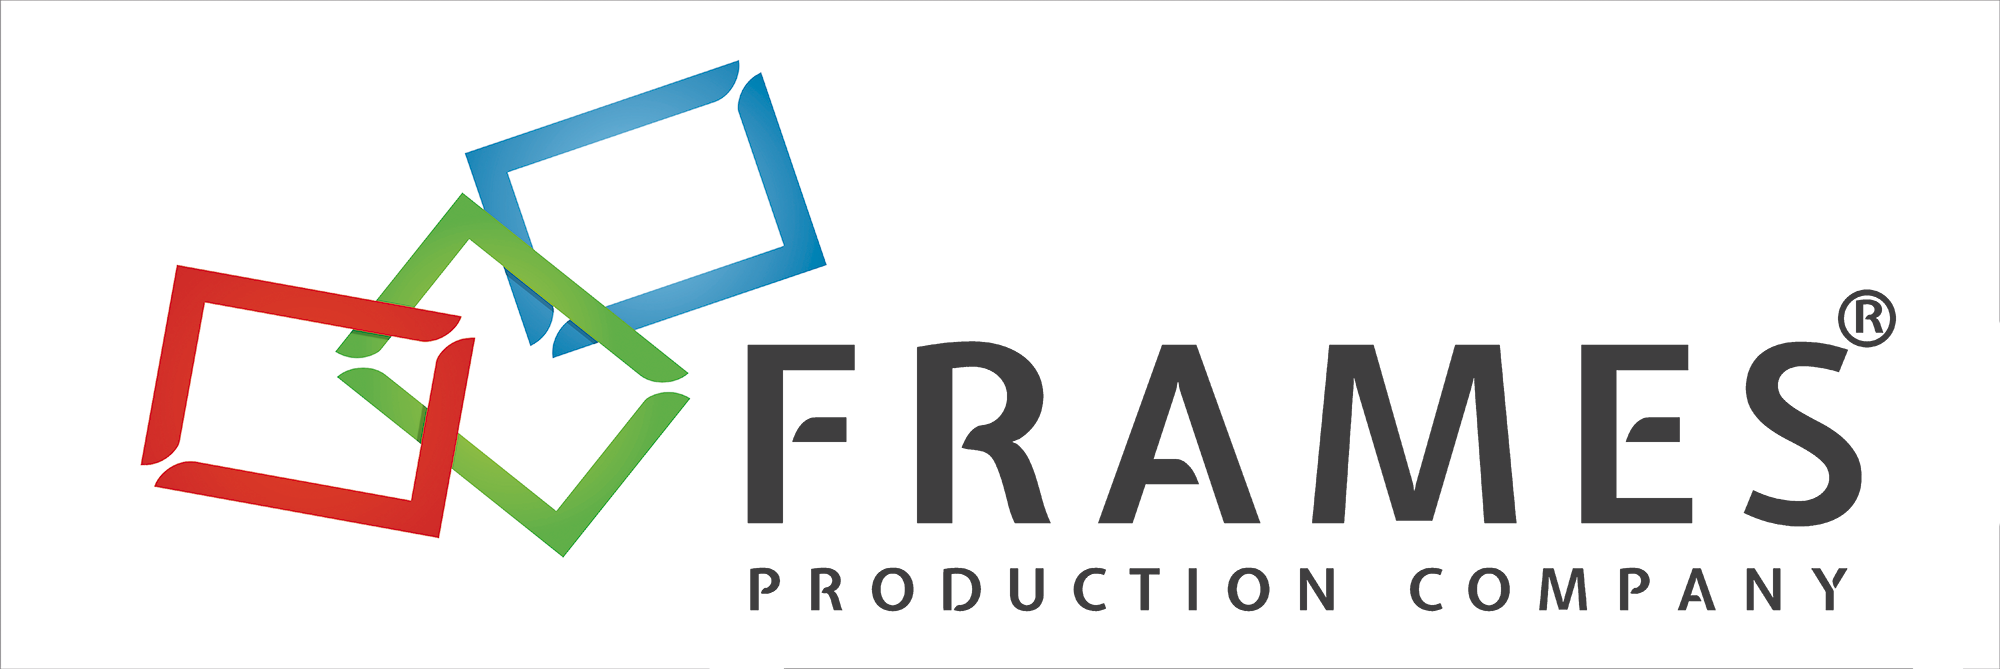 Frames Production Company - company